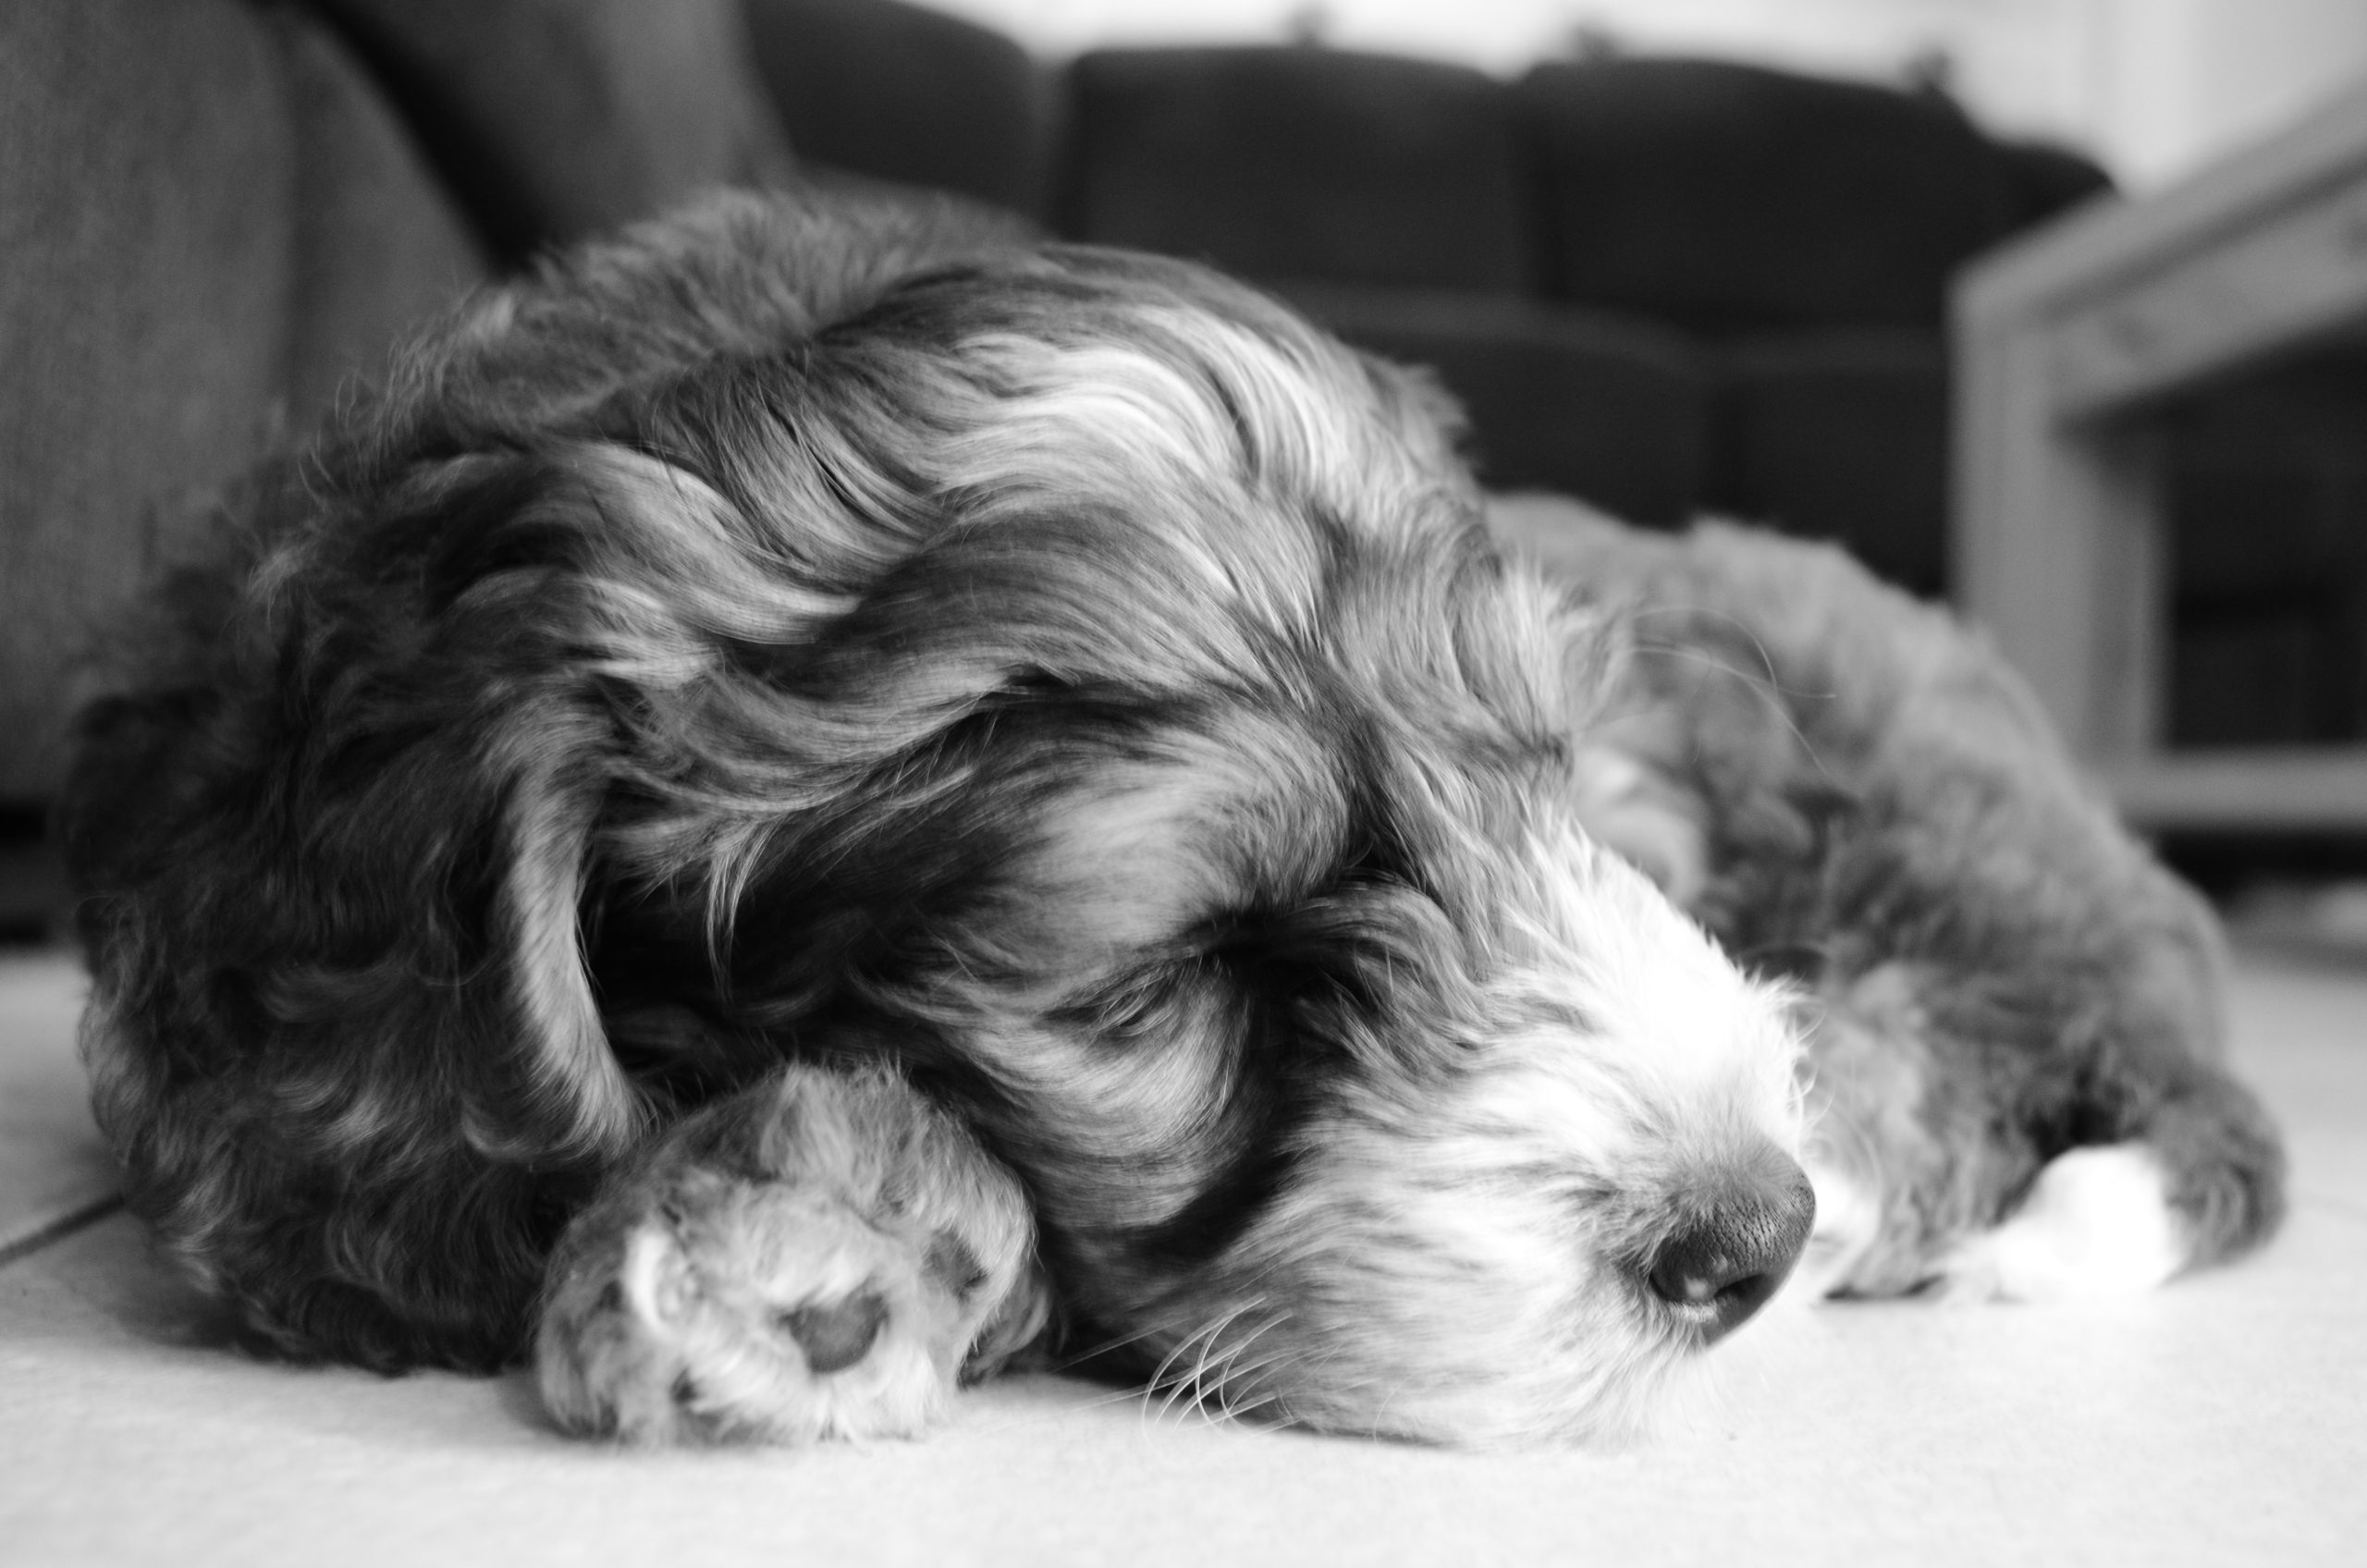 Sleeping Bernedoode puppy Cooper